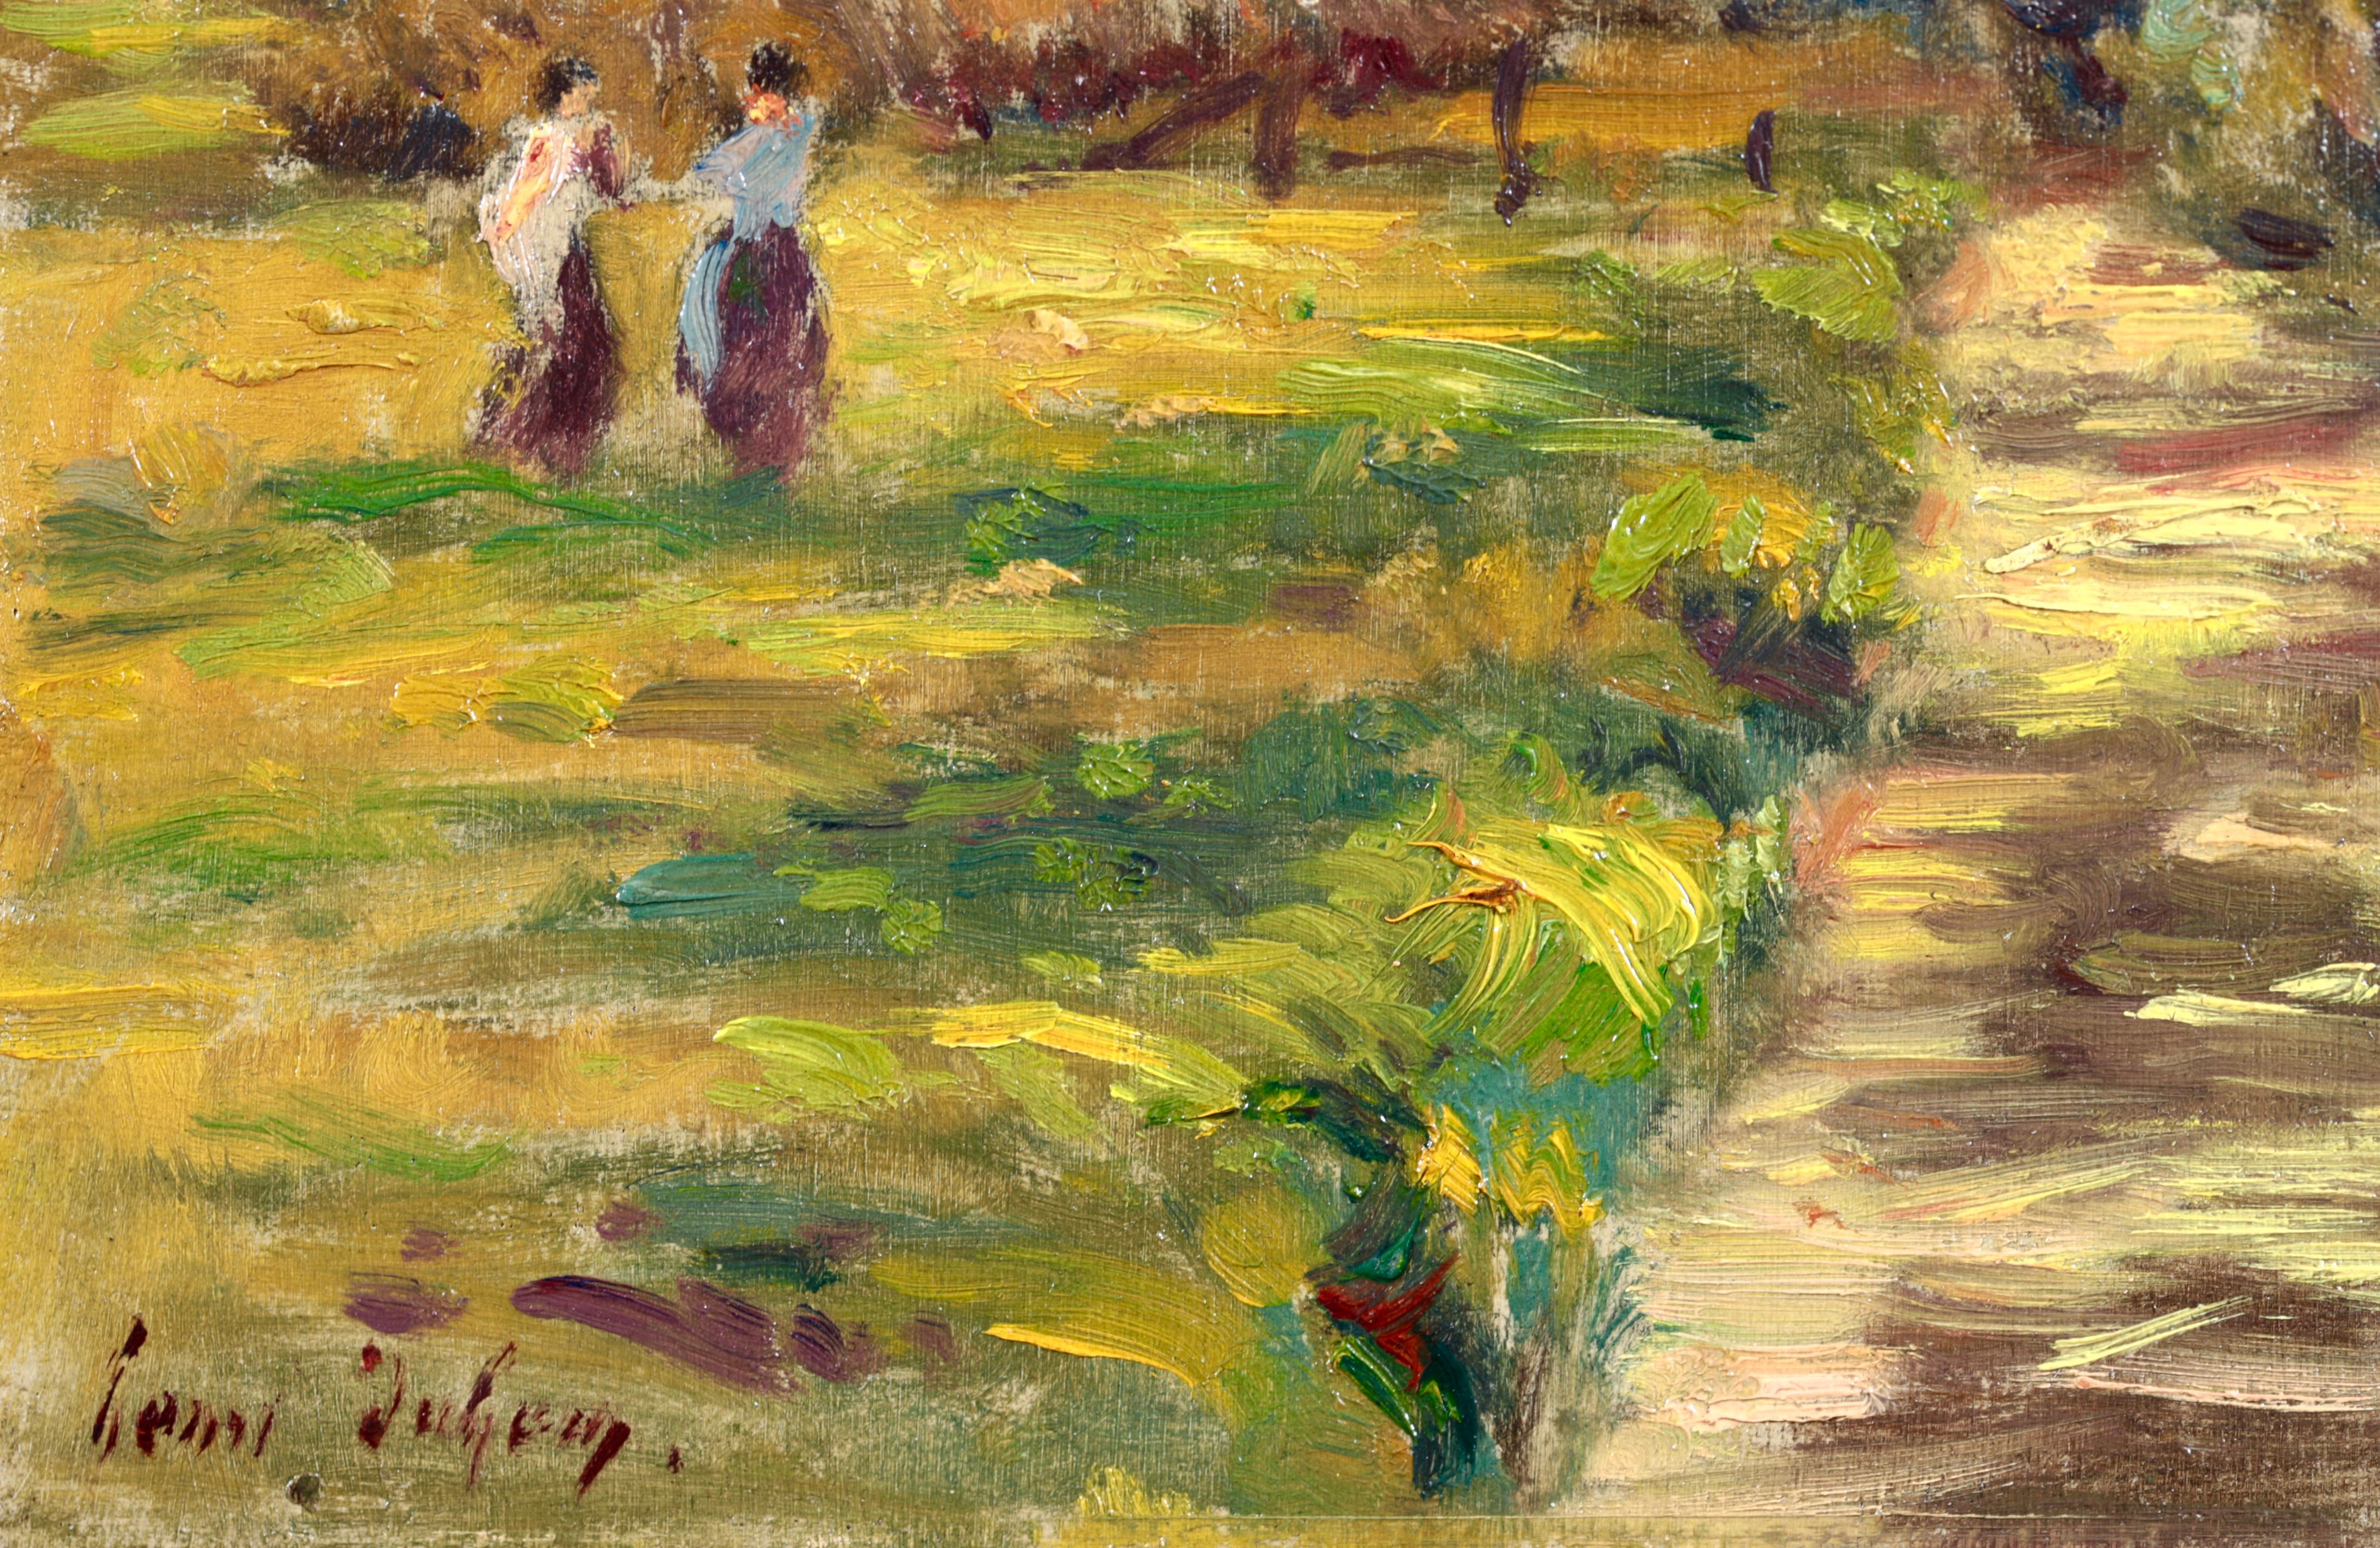 Paysage à l'huile sur panneau signé et daté du peintre impressionniste français Henri Duhem. L'œuvre représente deux femmes marchant sur une rive herbeuse verte près d'un ruisseau dans un paysage d'été.

Signature :
Signé en bas à gauche et daté de